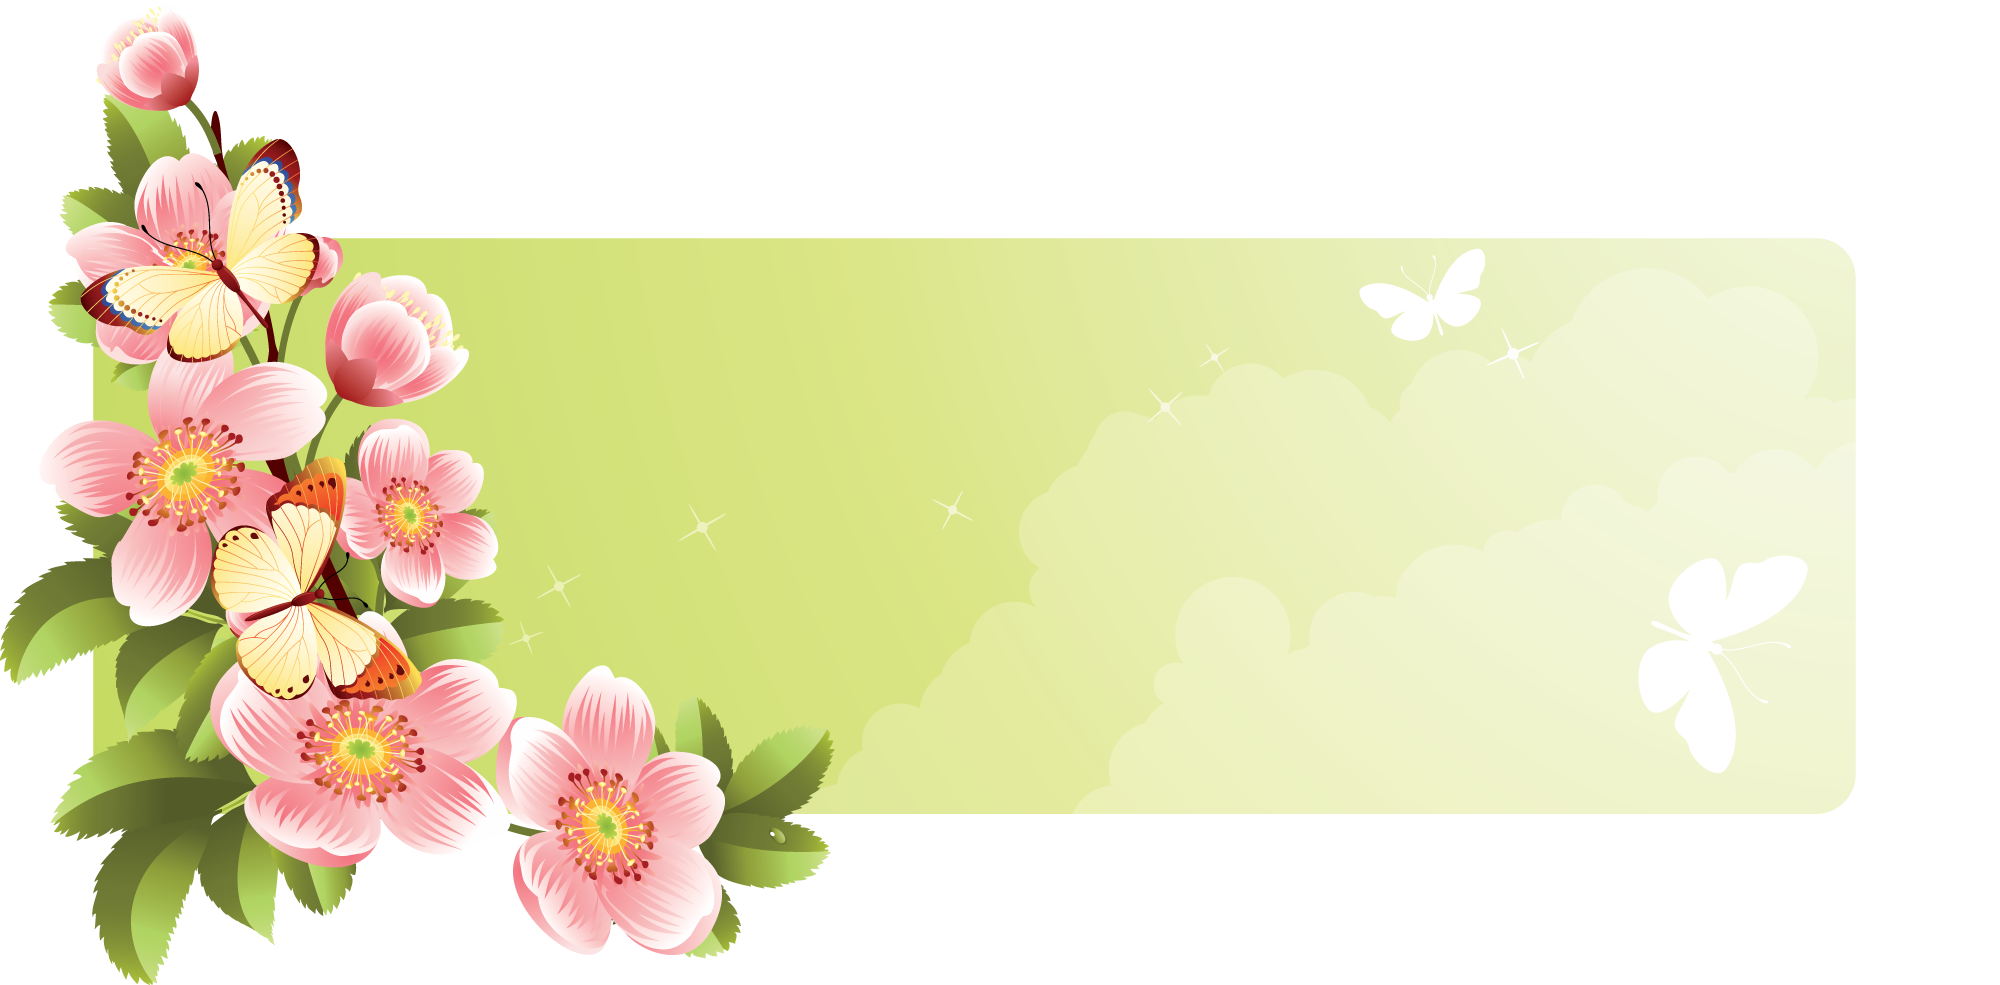 花や葉のイラスト フリー素材 バナー タイトル枠no 012 ピンク 黄緑 蝶